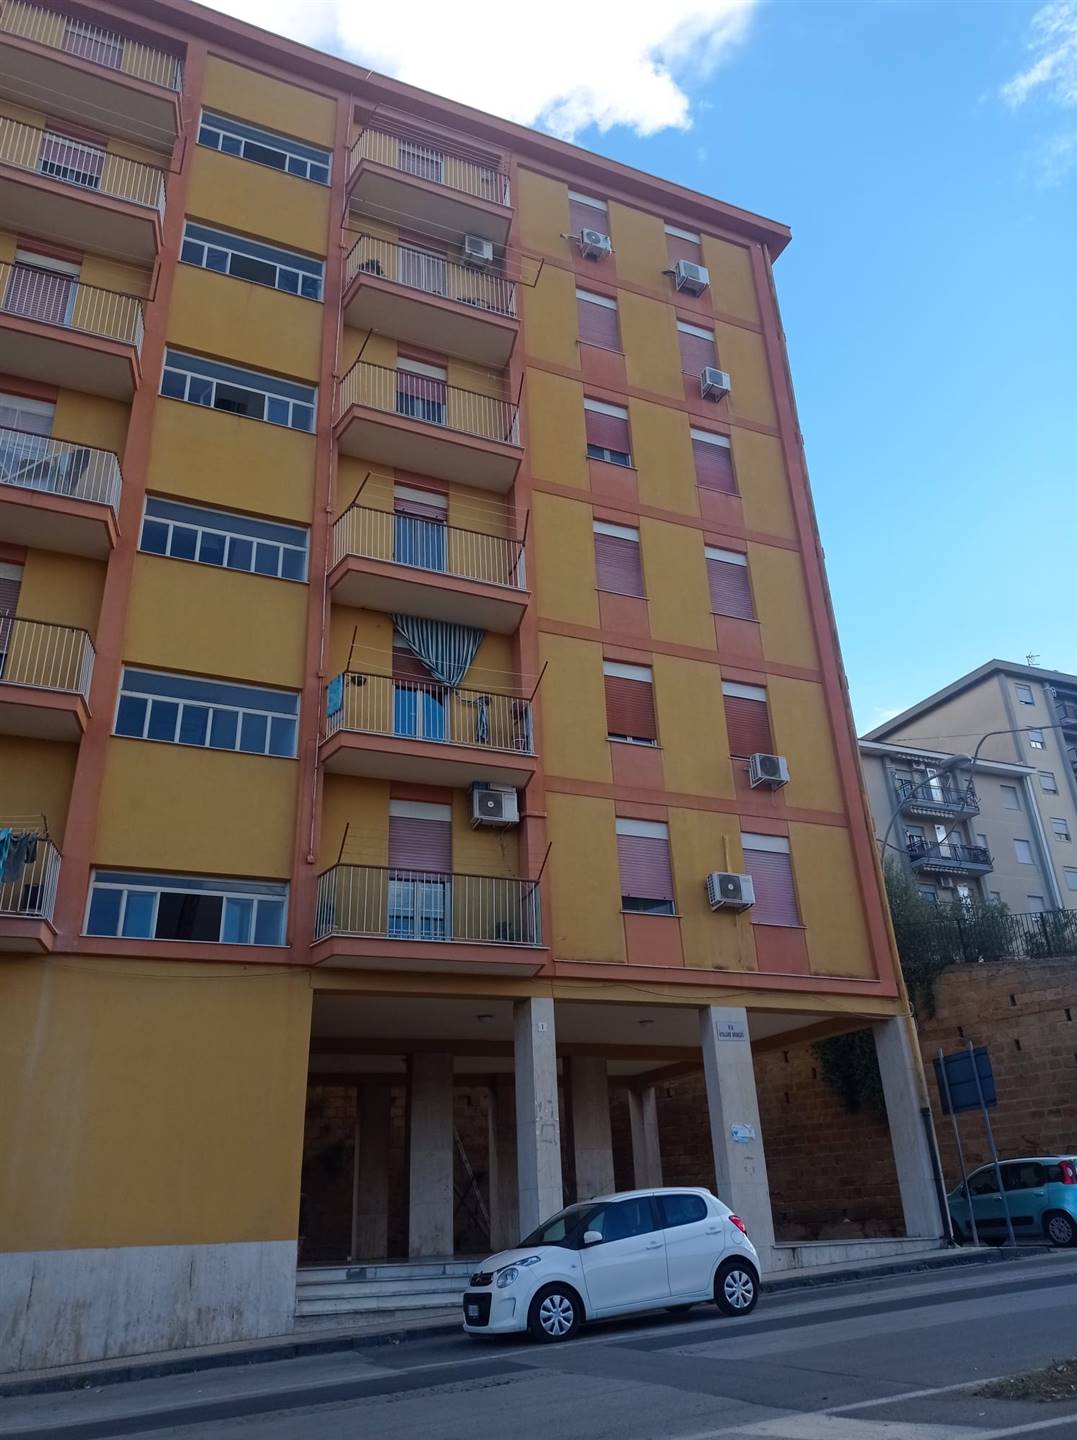 Appartamento in Via Vitaliano Brancati 1 in zona Regione,sicilia,malta,leone Xiii,via Libertà,tribunale a Caltanissetta